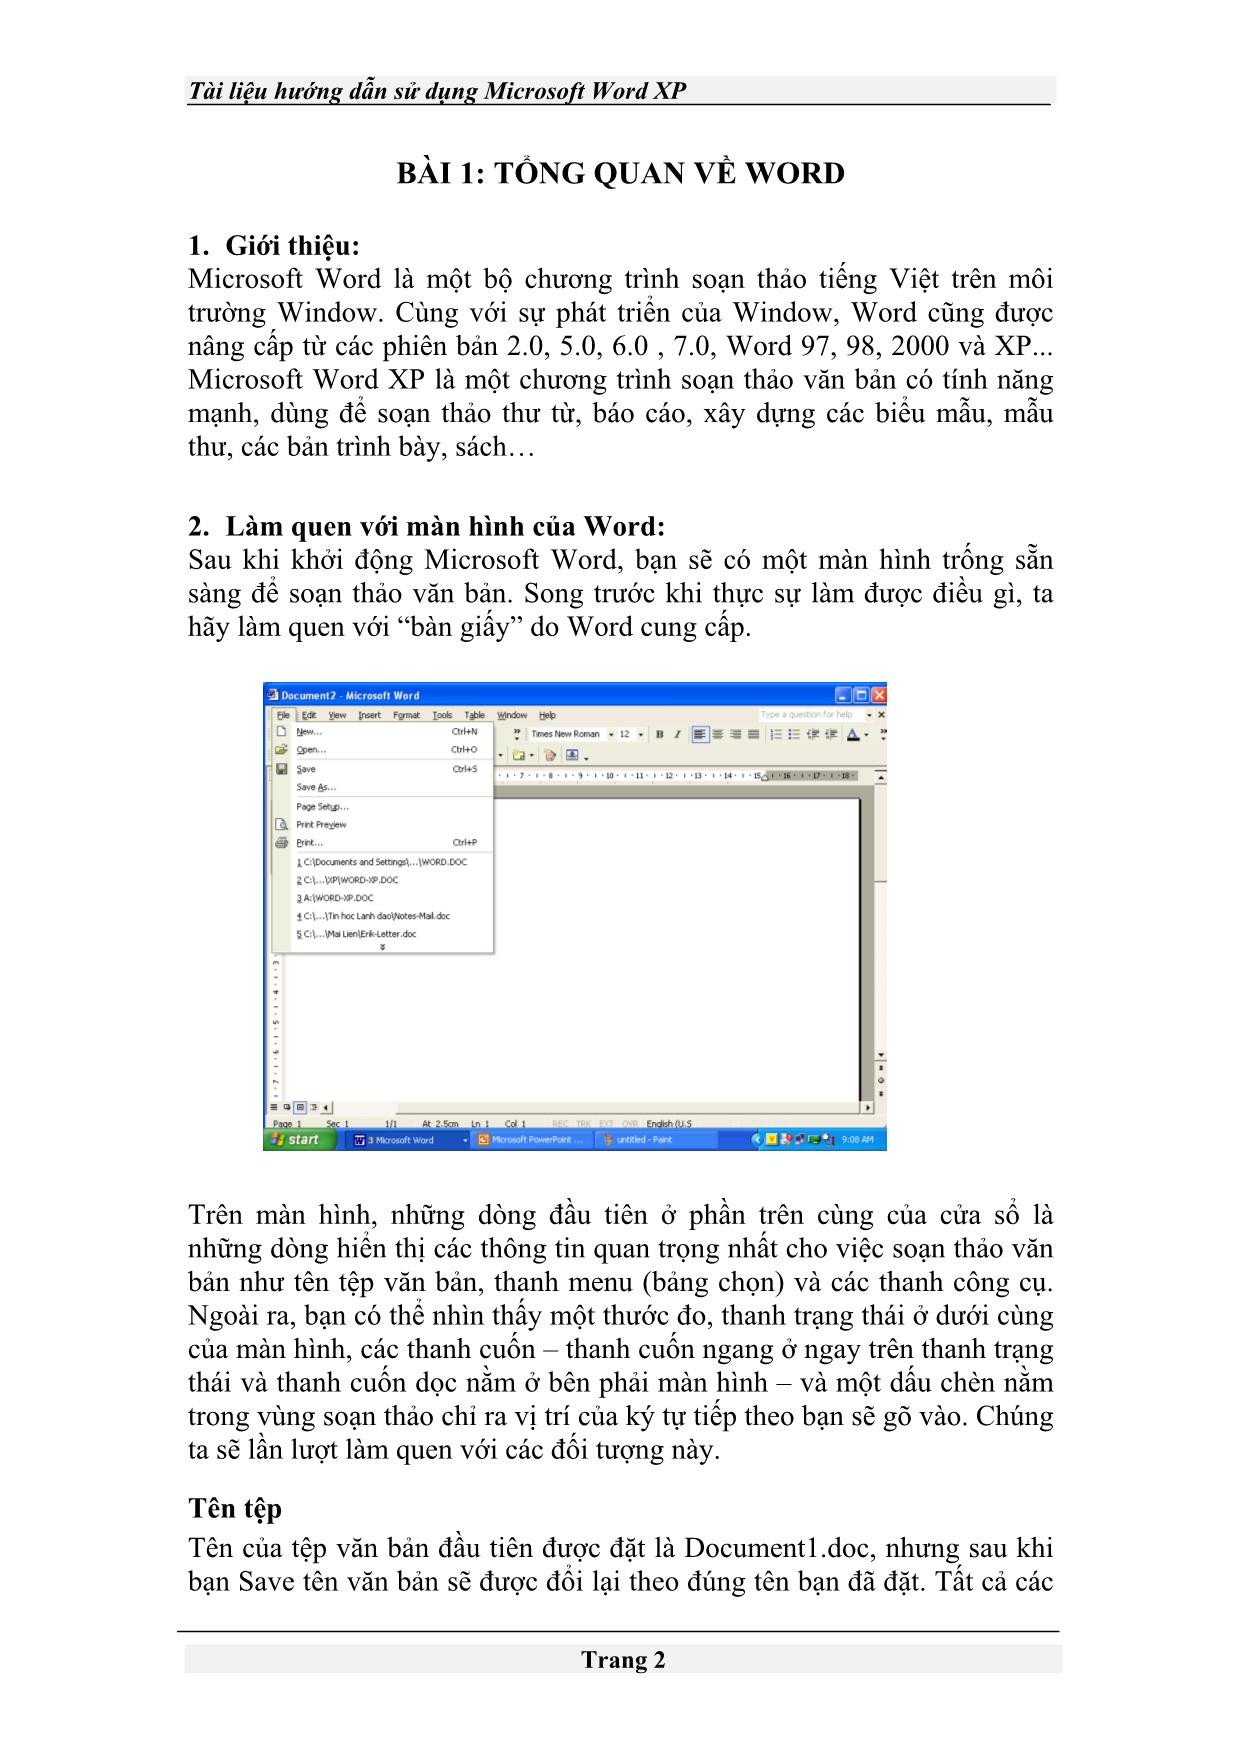 Tài liệu Hướng dẫn sử dụng Microsoft Word XP trang 2